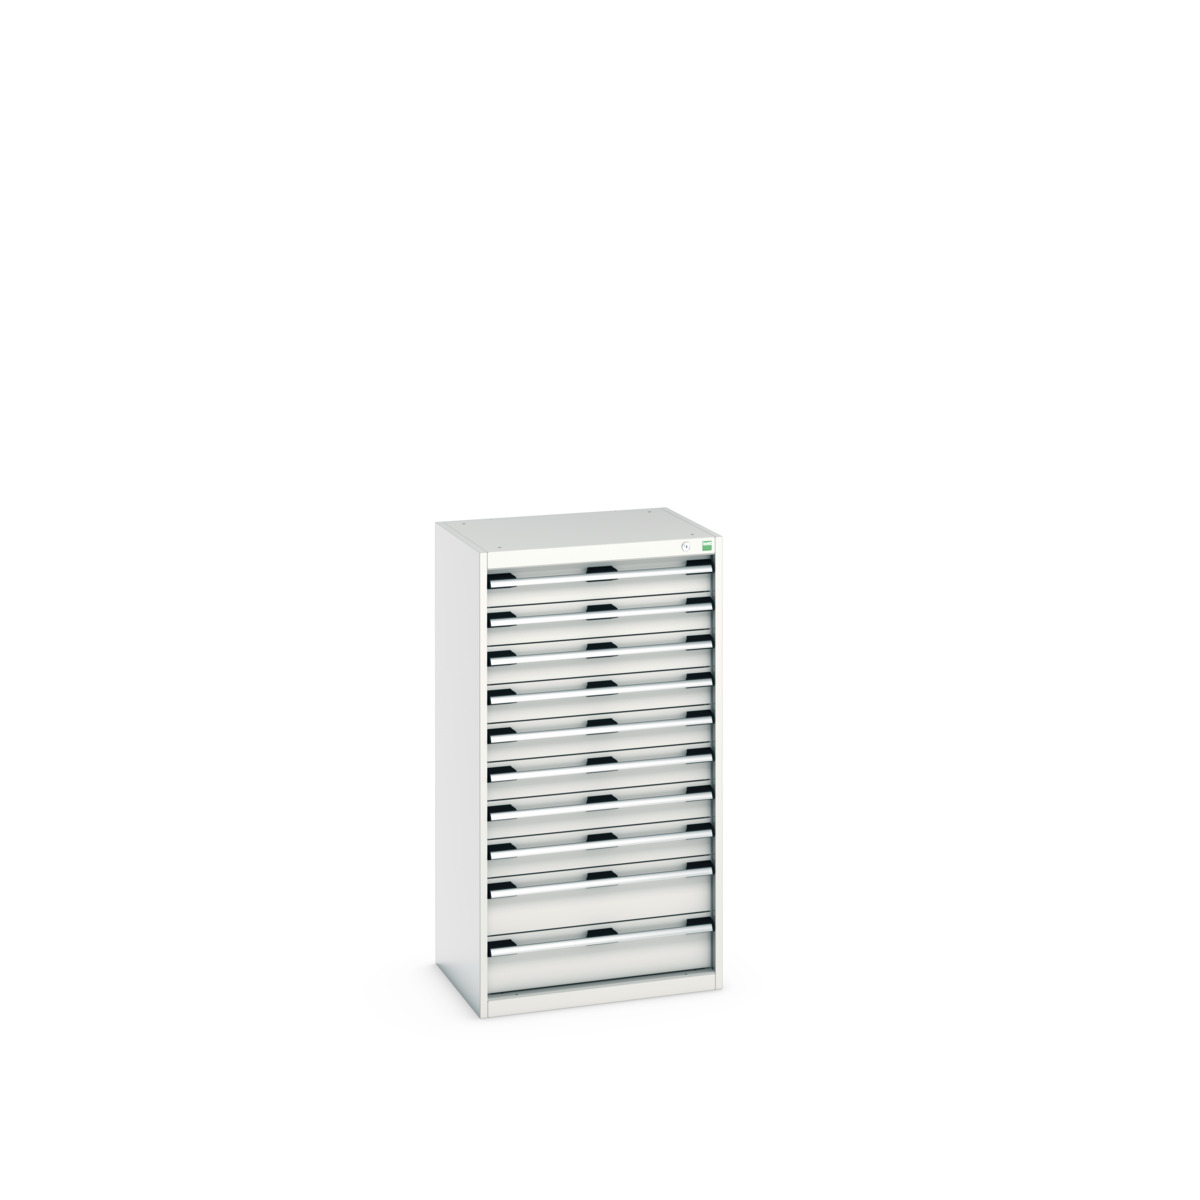 40011065.16V - cubio drawer cabinet